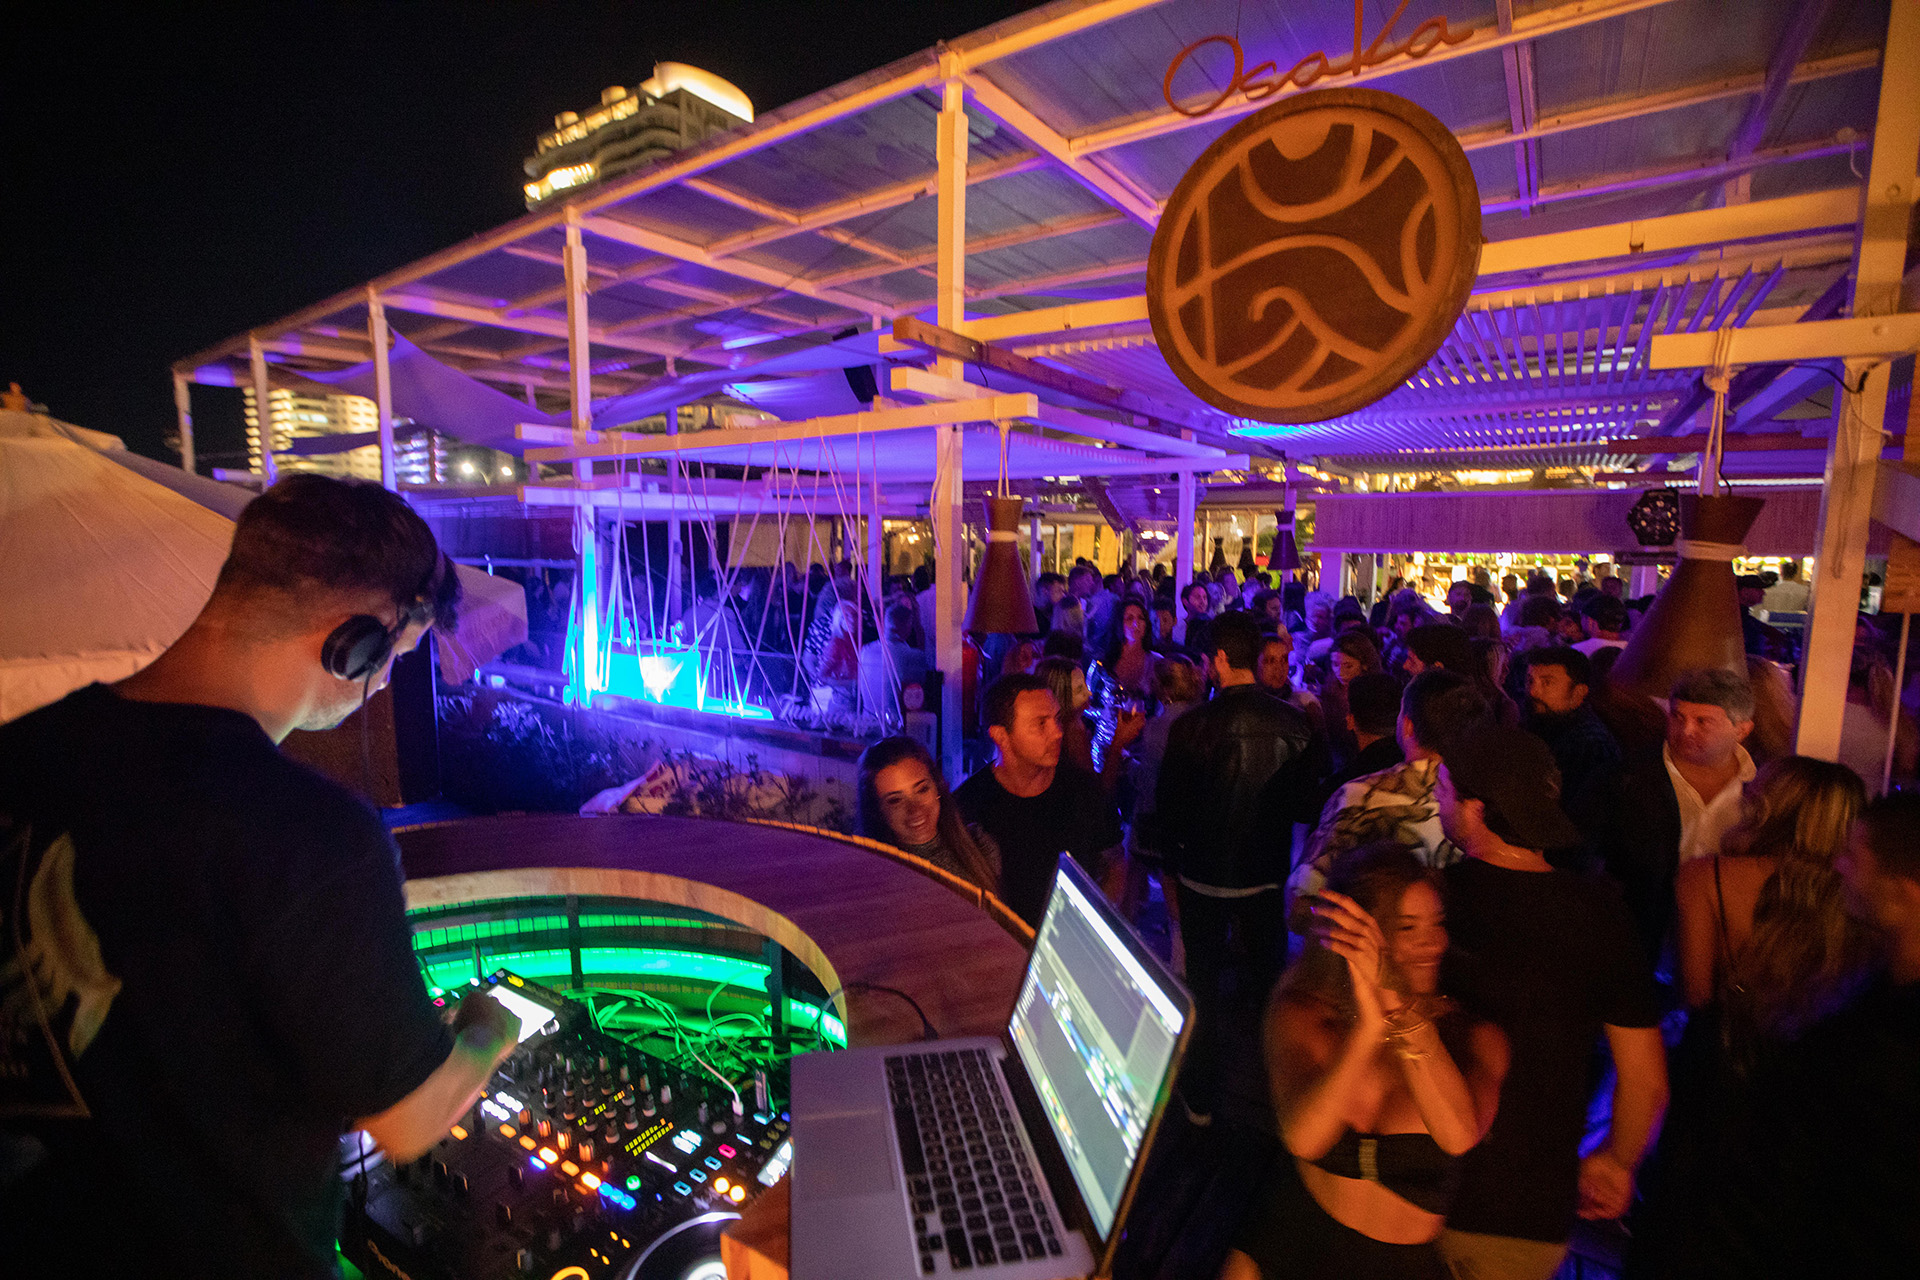 Finalizada la cena en Osaka, los invitados bailaron hasta altas horas de la madrugada al ritmo del DJ que hizo vibrar a Ovo Beach